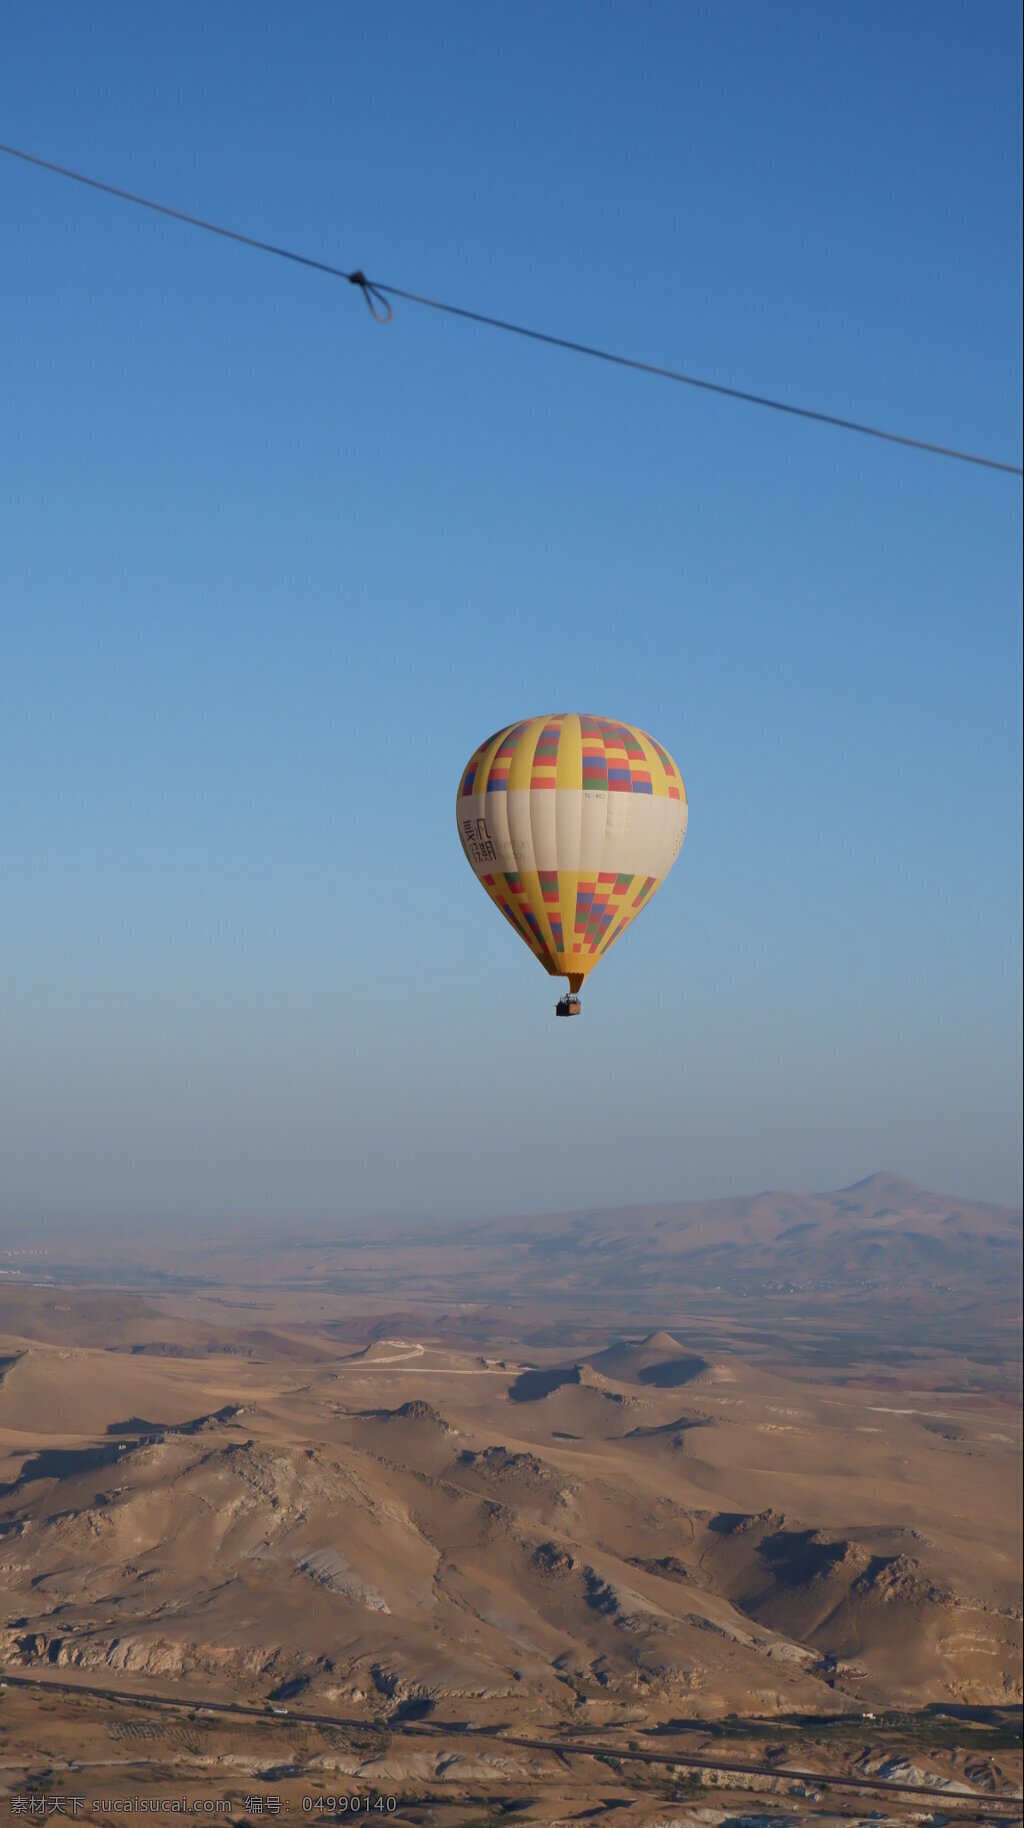 土耳其 热气球 早晨 日出 戈壁 荒漠 天空 蓝天 旅游 度假 休闲 飞行 娱乐 土耳其摄影 旅游摄影 国外旅游